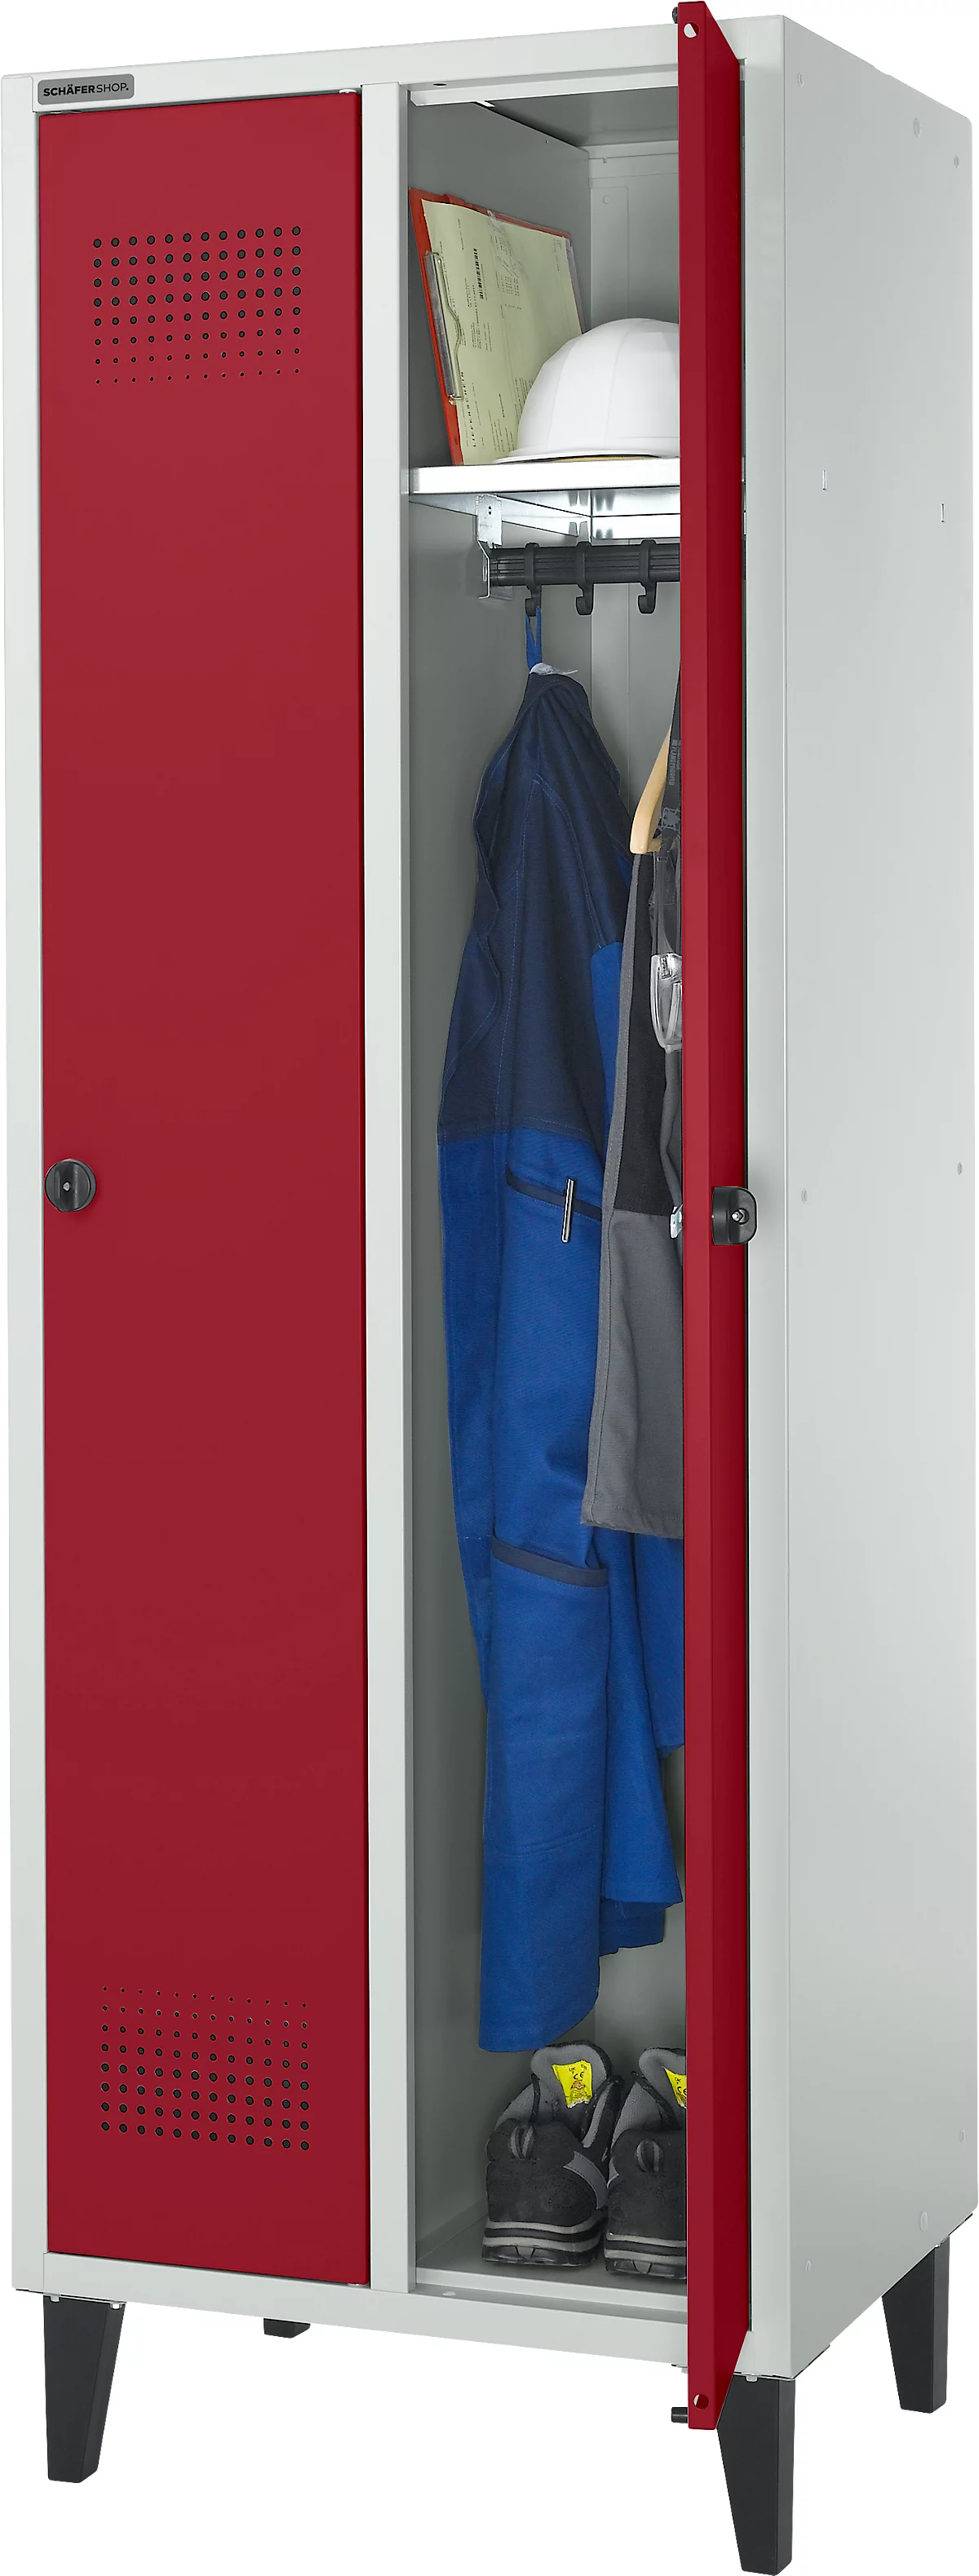 Schäfer Shop Genius Armario independiente, 2 compartimentos, ancho 630 x fondo 500 x alto 1850 mm, cerradura de seguridad, gris claro/rojo